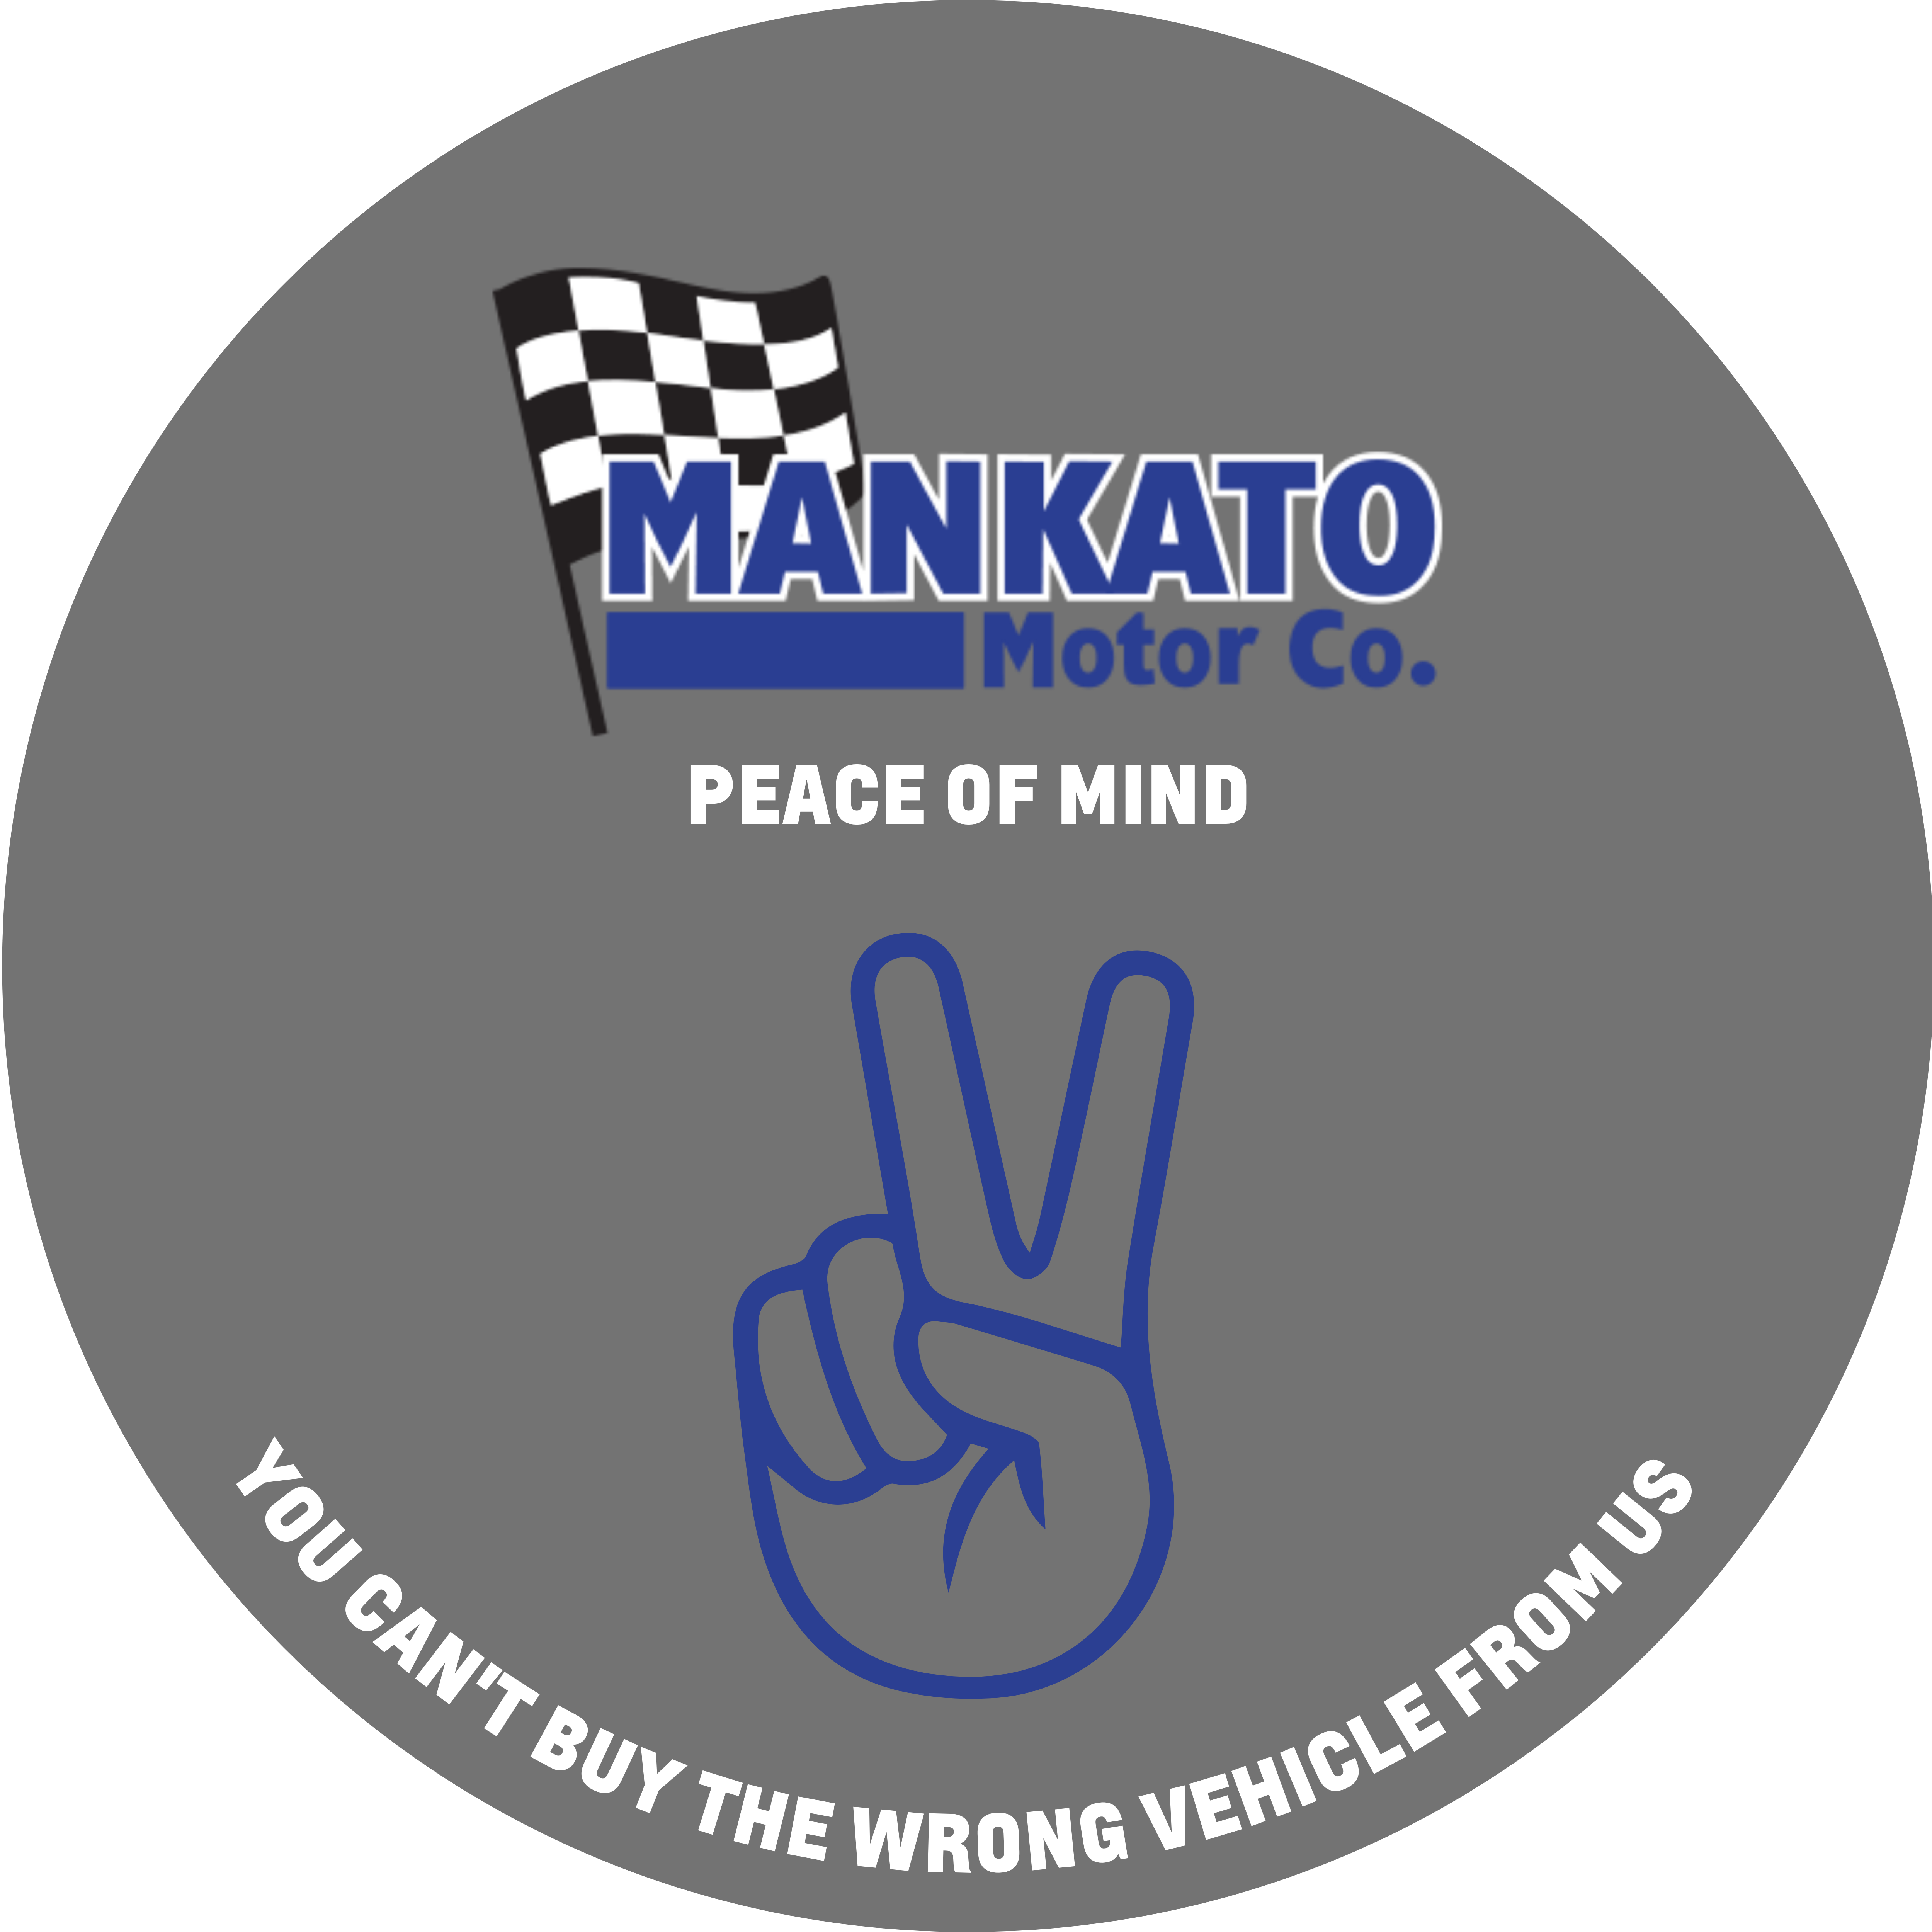 Mankato Motor Company in Mankato MN